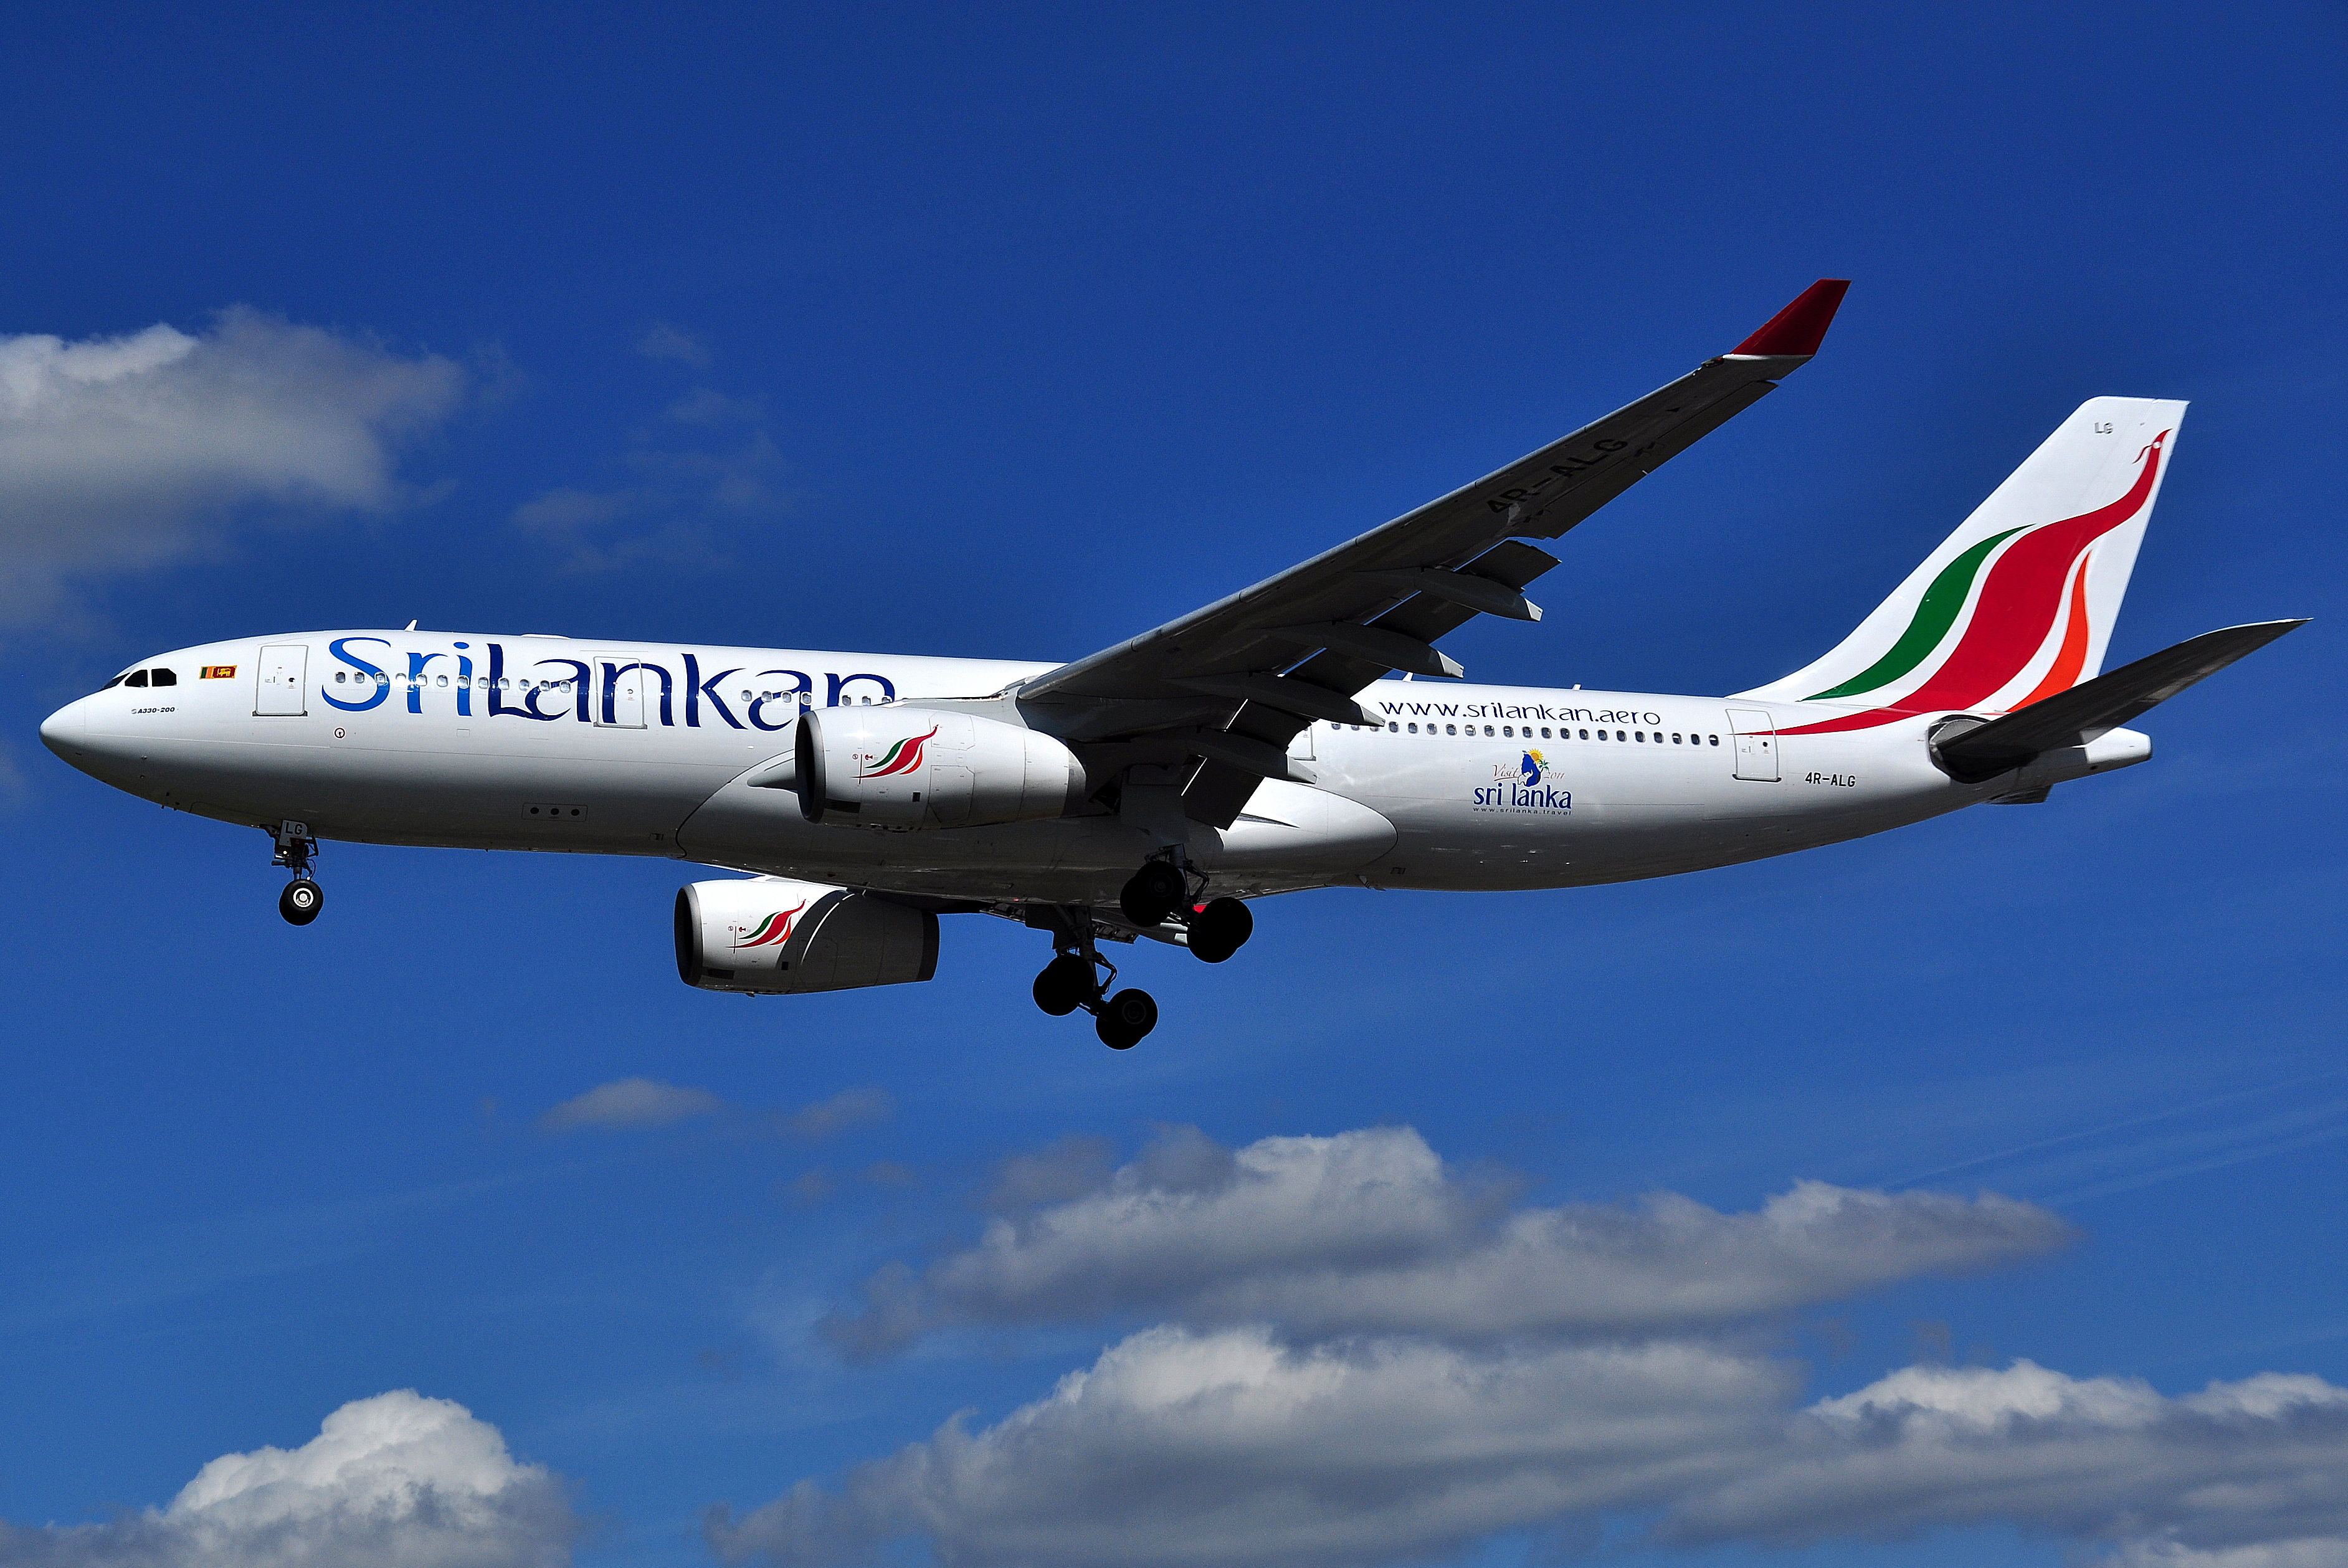 Distal & Itr Group: nuova struttura tariffaria “Easy UL” di Srilankan Airlines. Collegamenti anche per Maldive, India e Thailandia